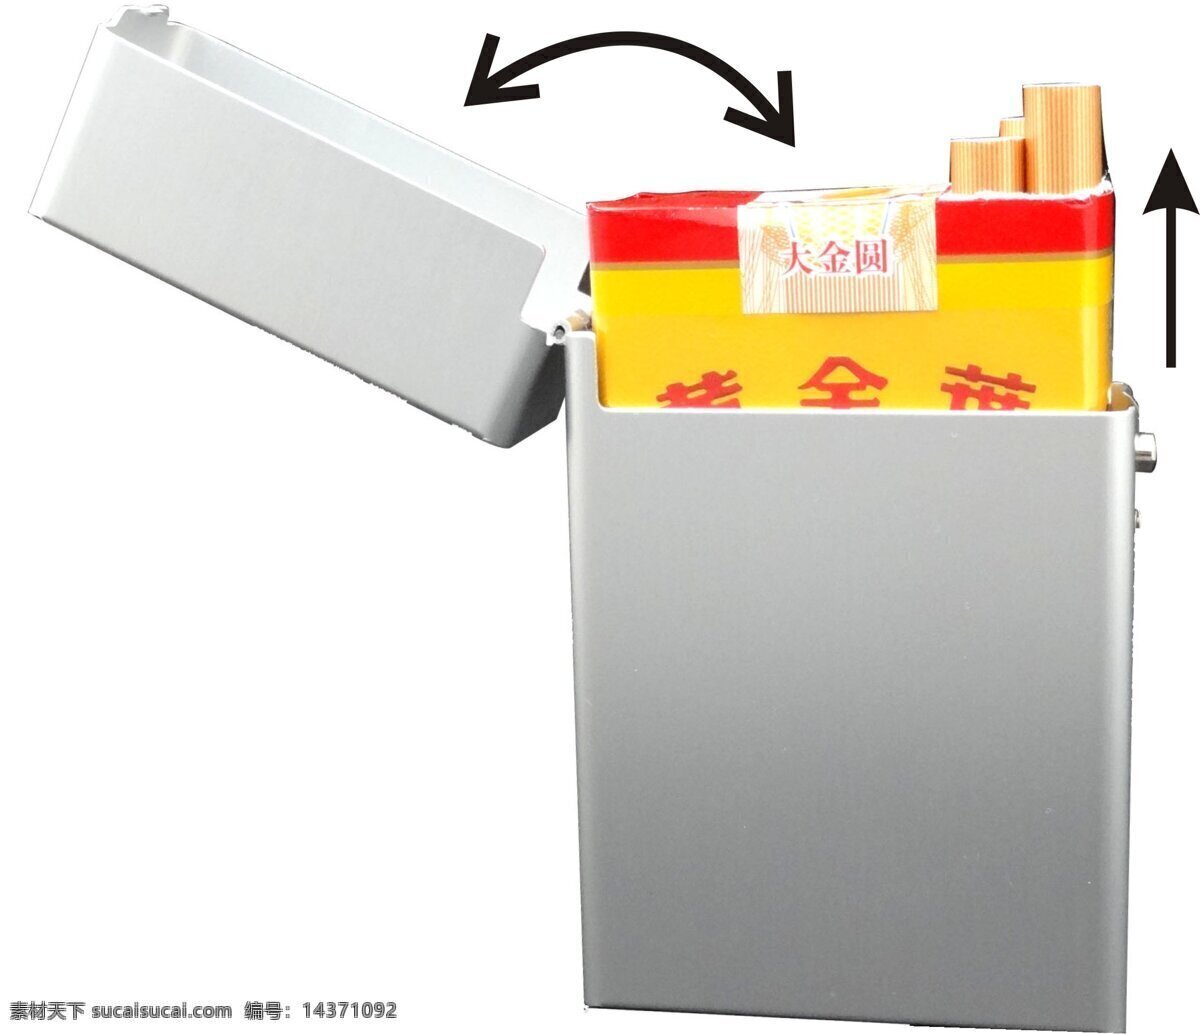 铝制烟盒 侧开 香烟 烟盒 盒子 铝制 生活百科 生活素材